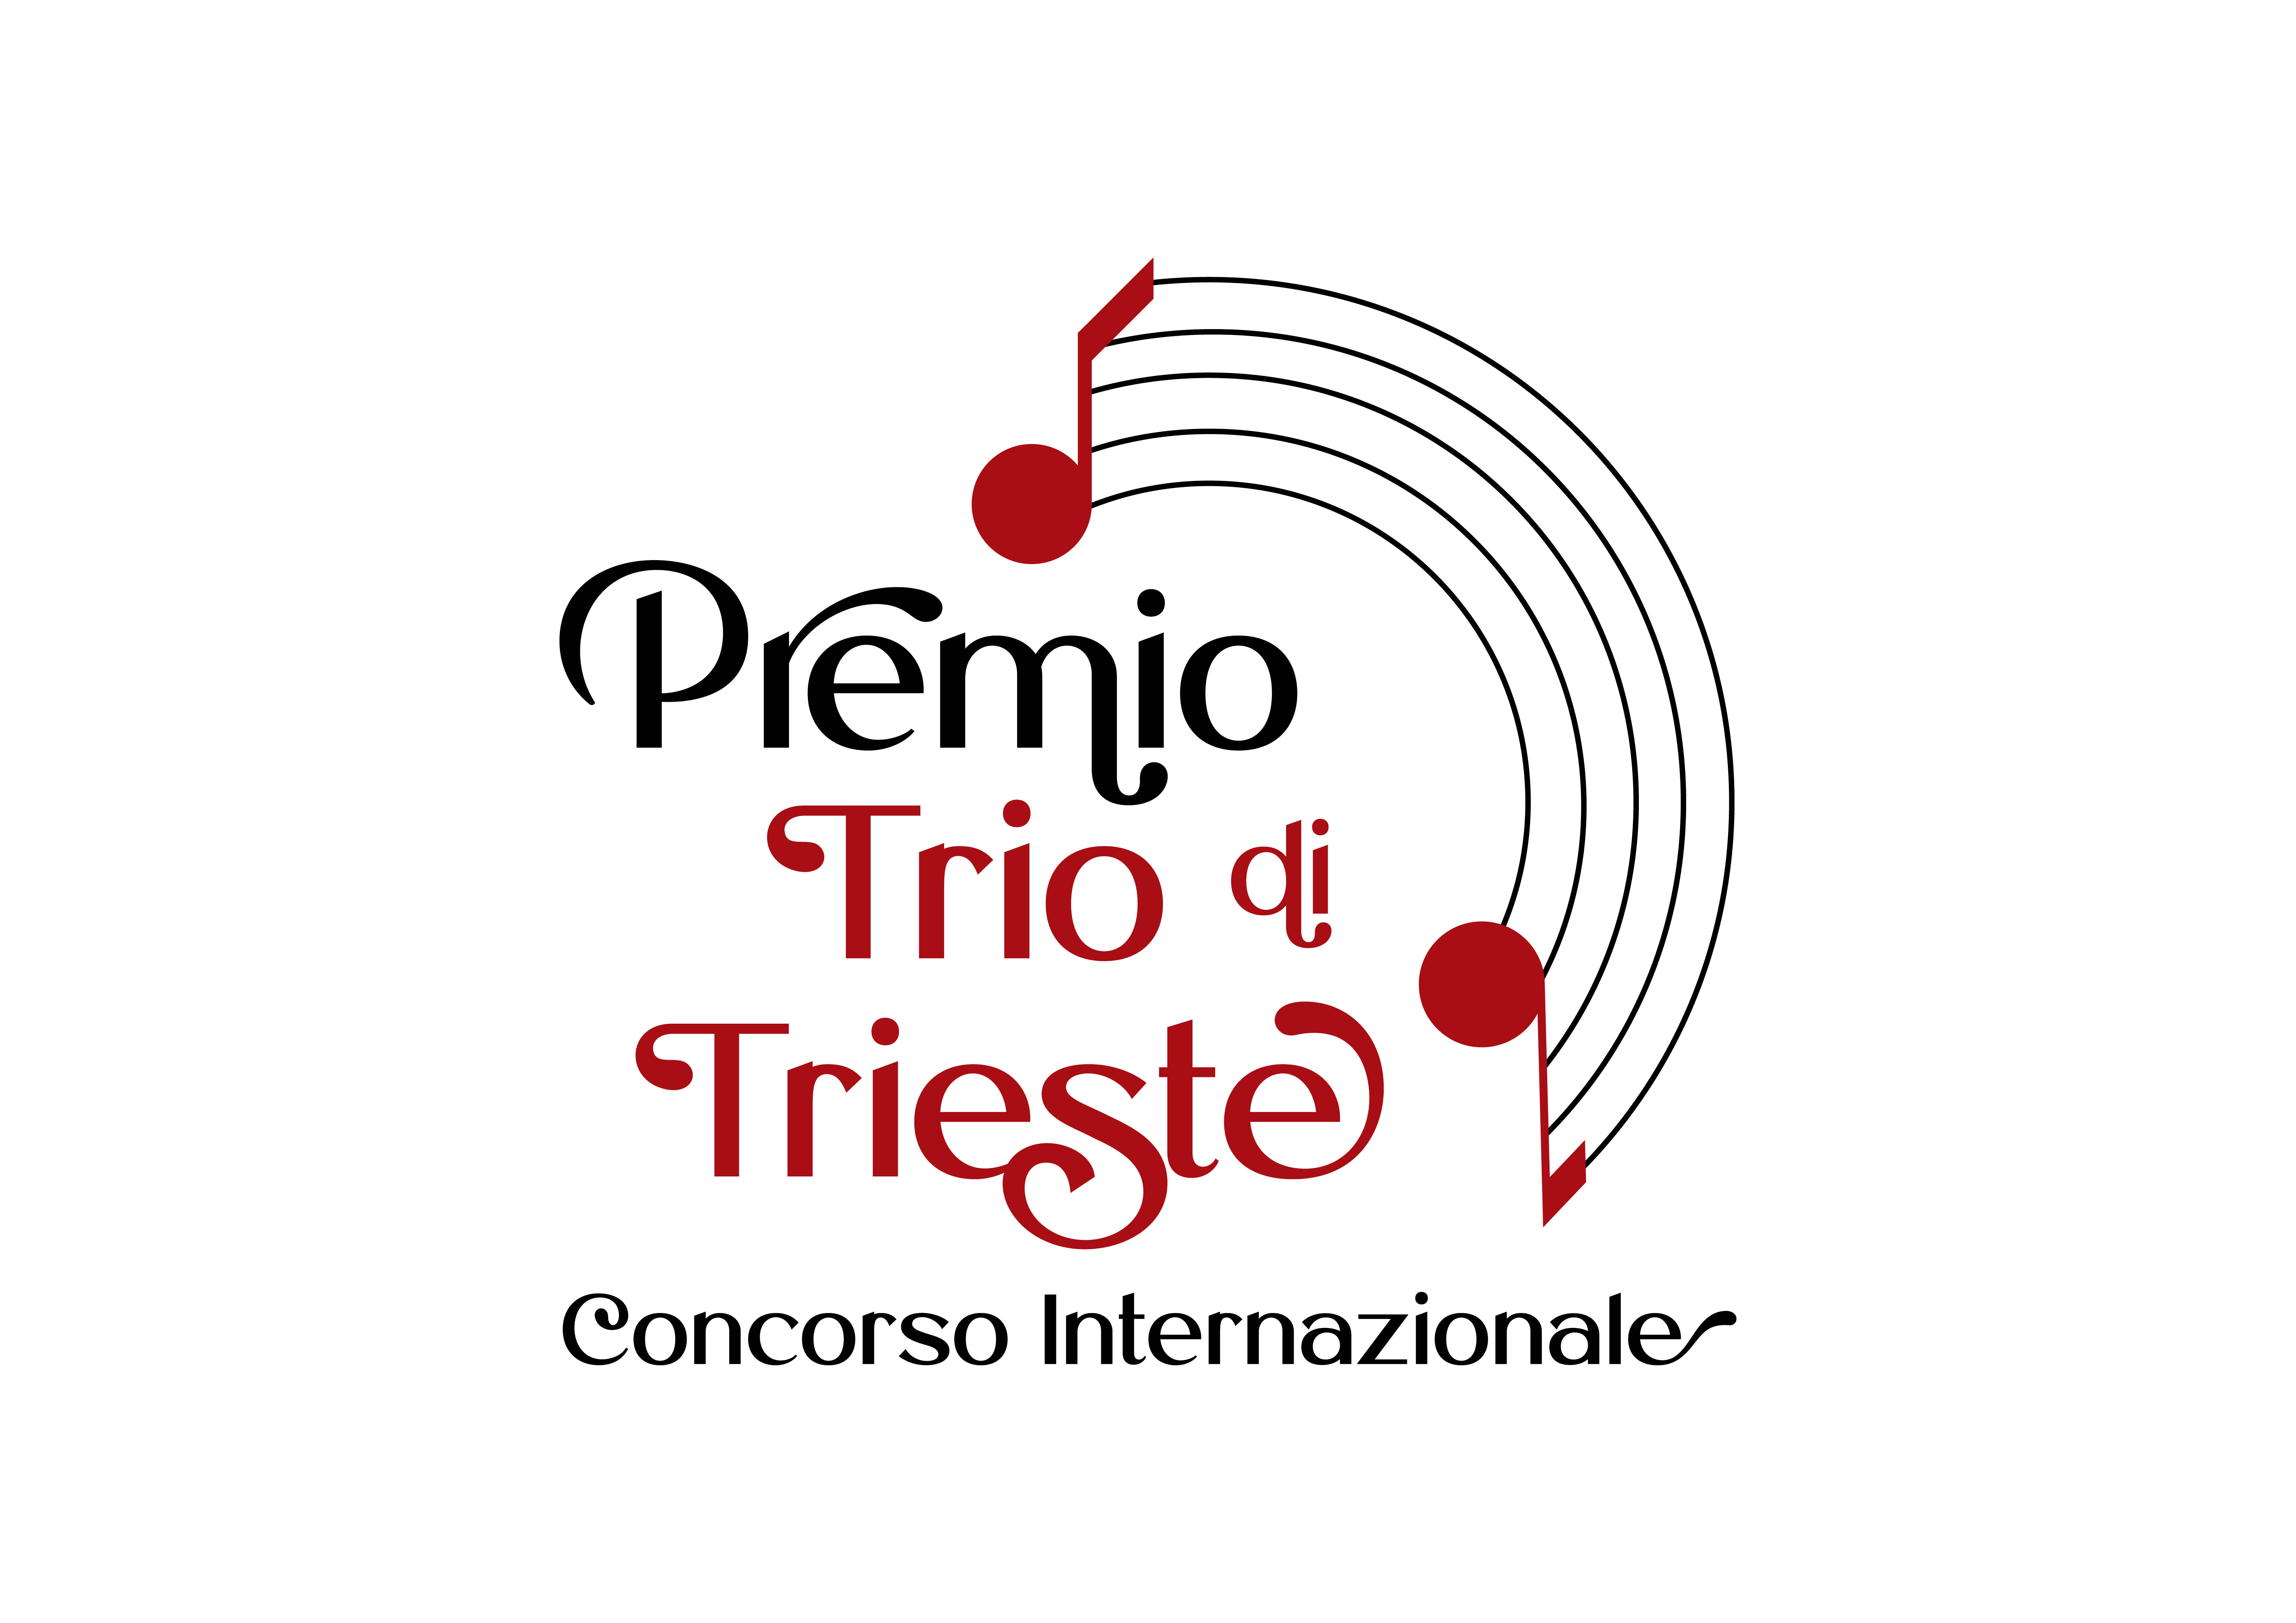 PremioTriodiTrieste_logo